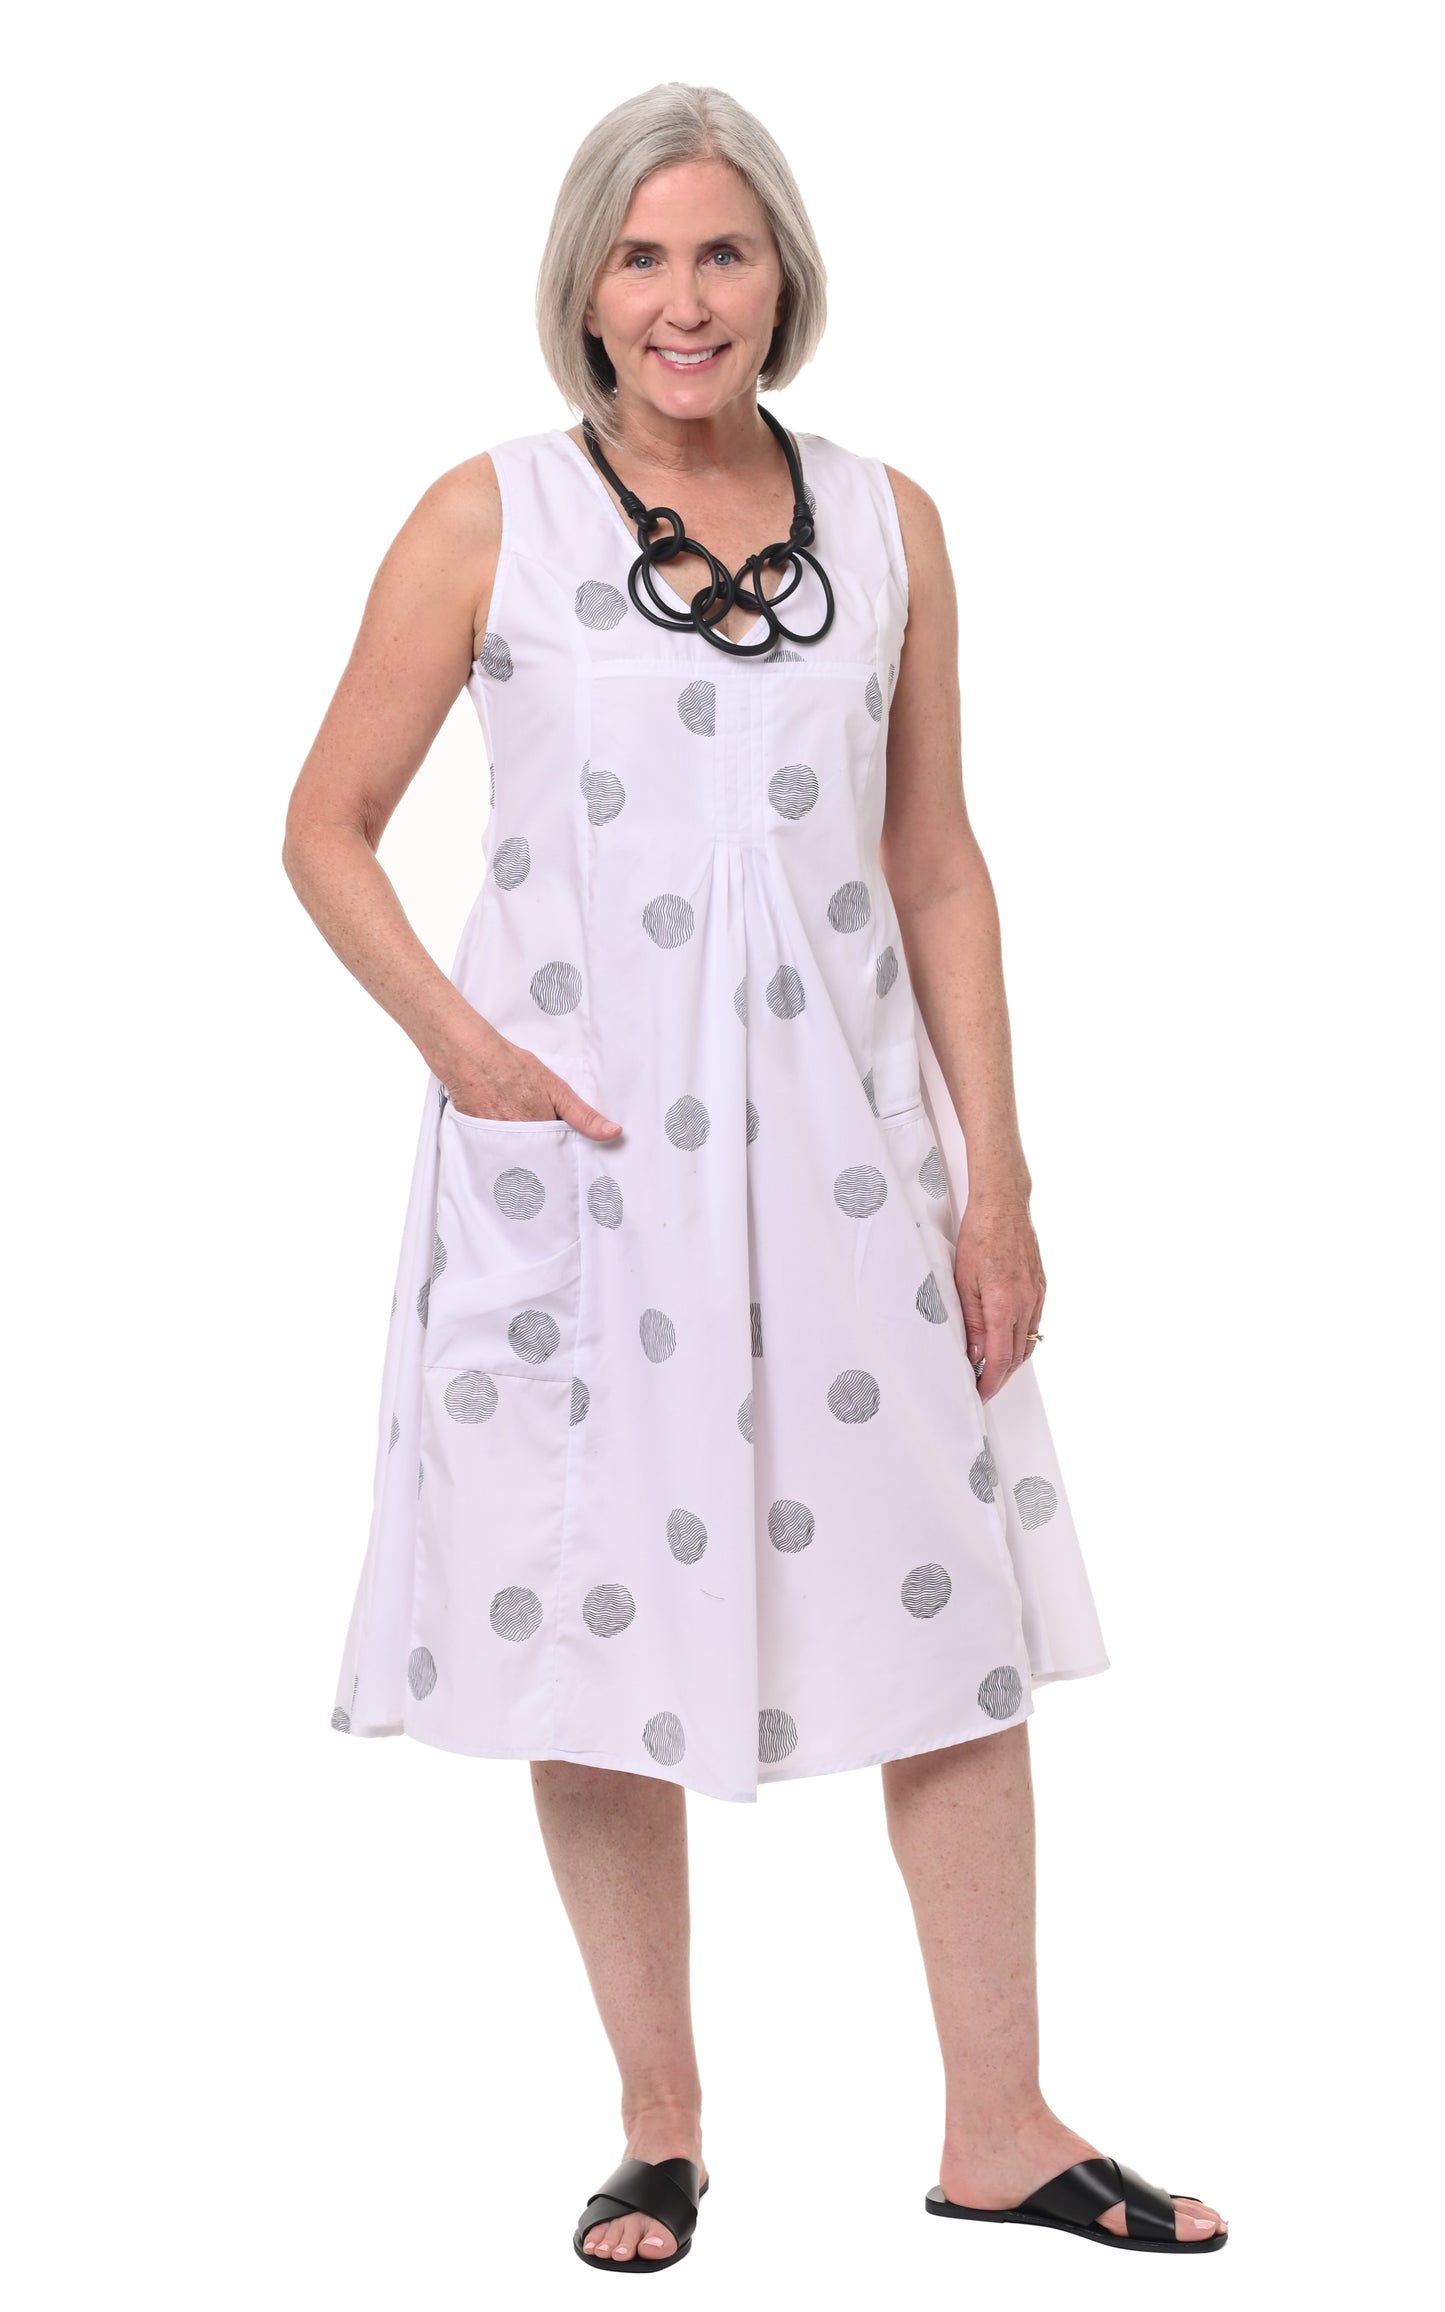 CV656 Poppie Dress in White Thumbprint